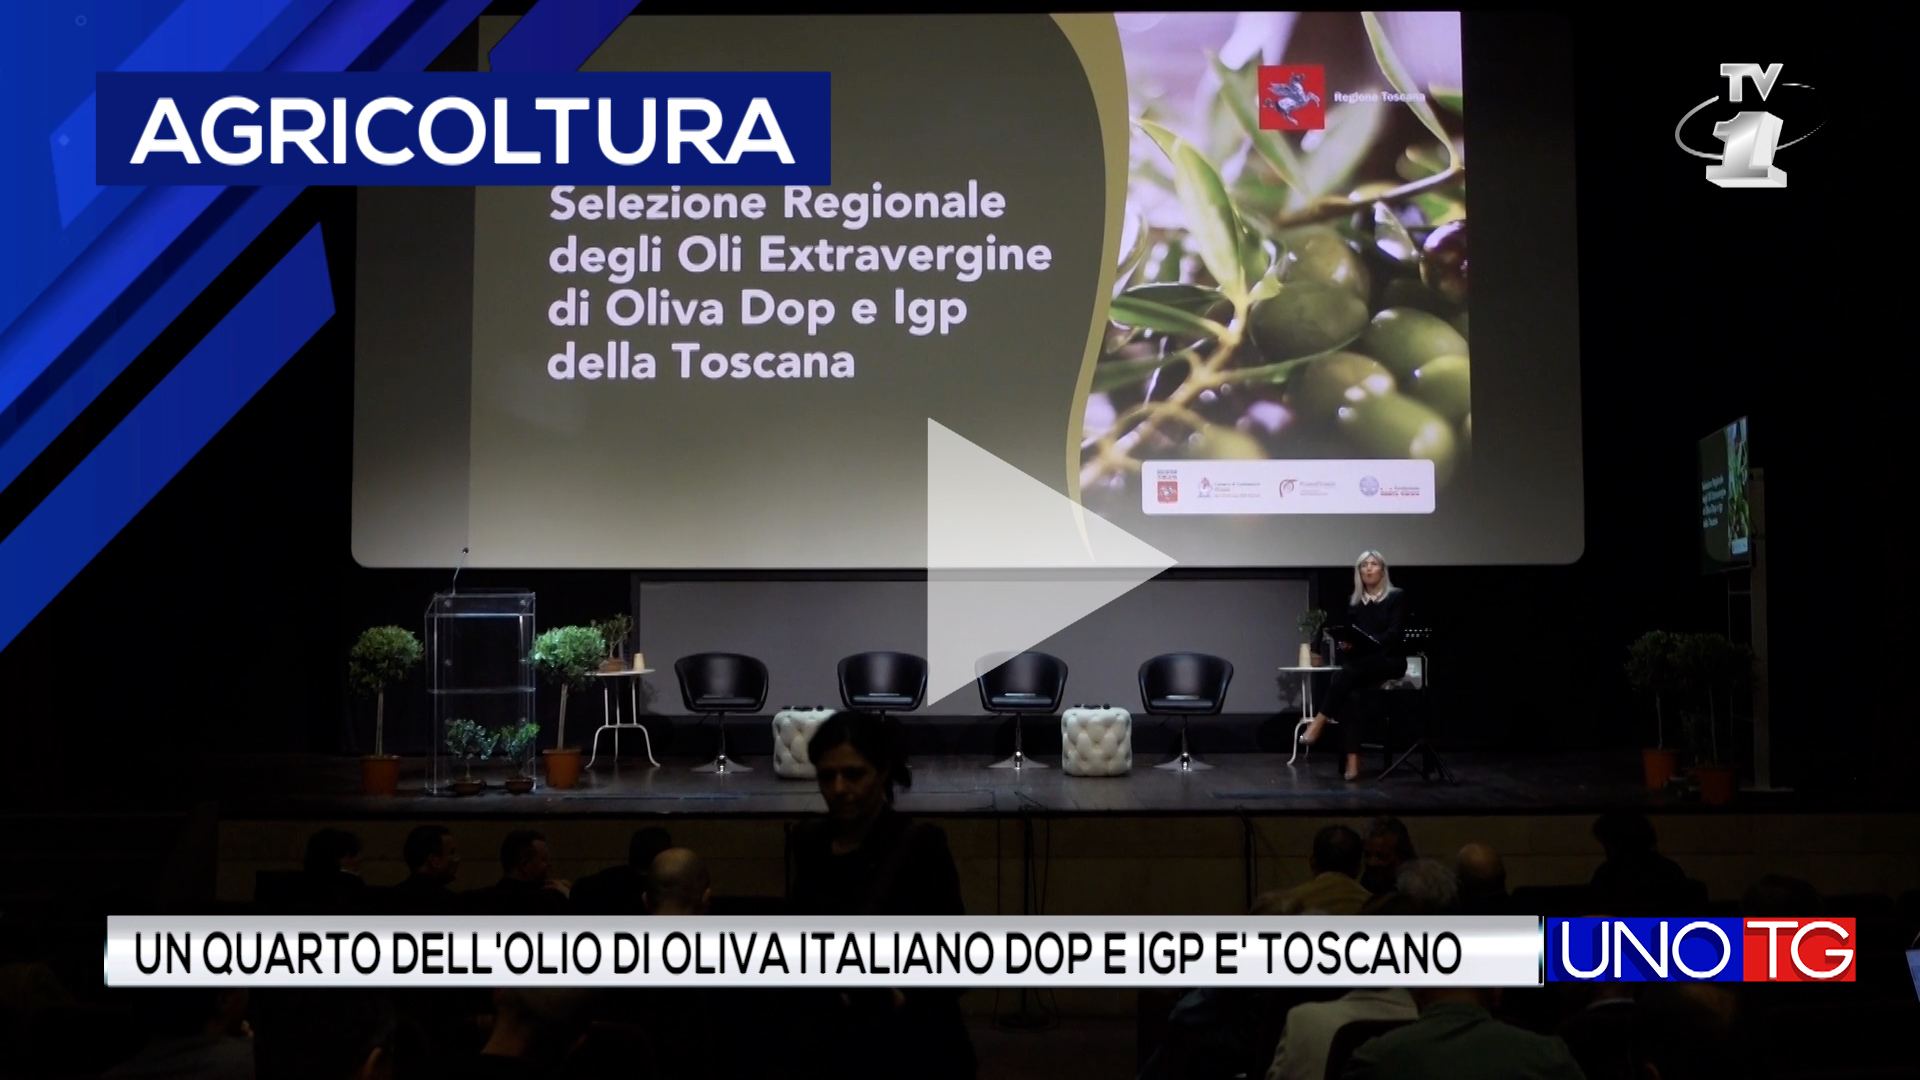 Un quarto dell'olio d'oliva italiano DOP e IGP è toscano